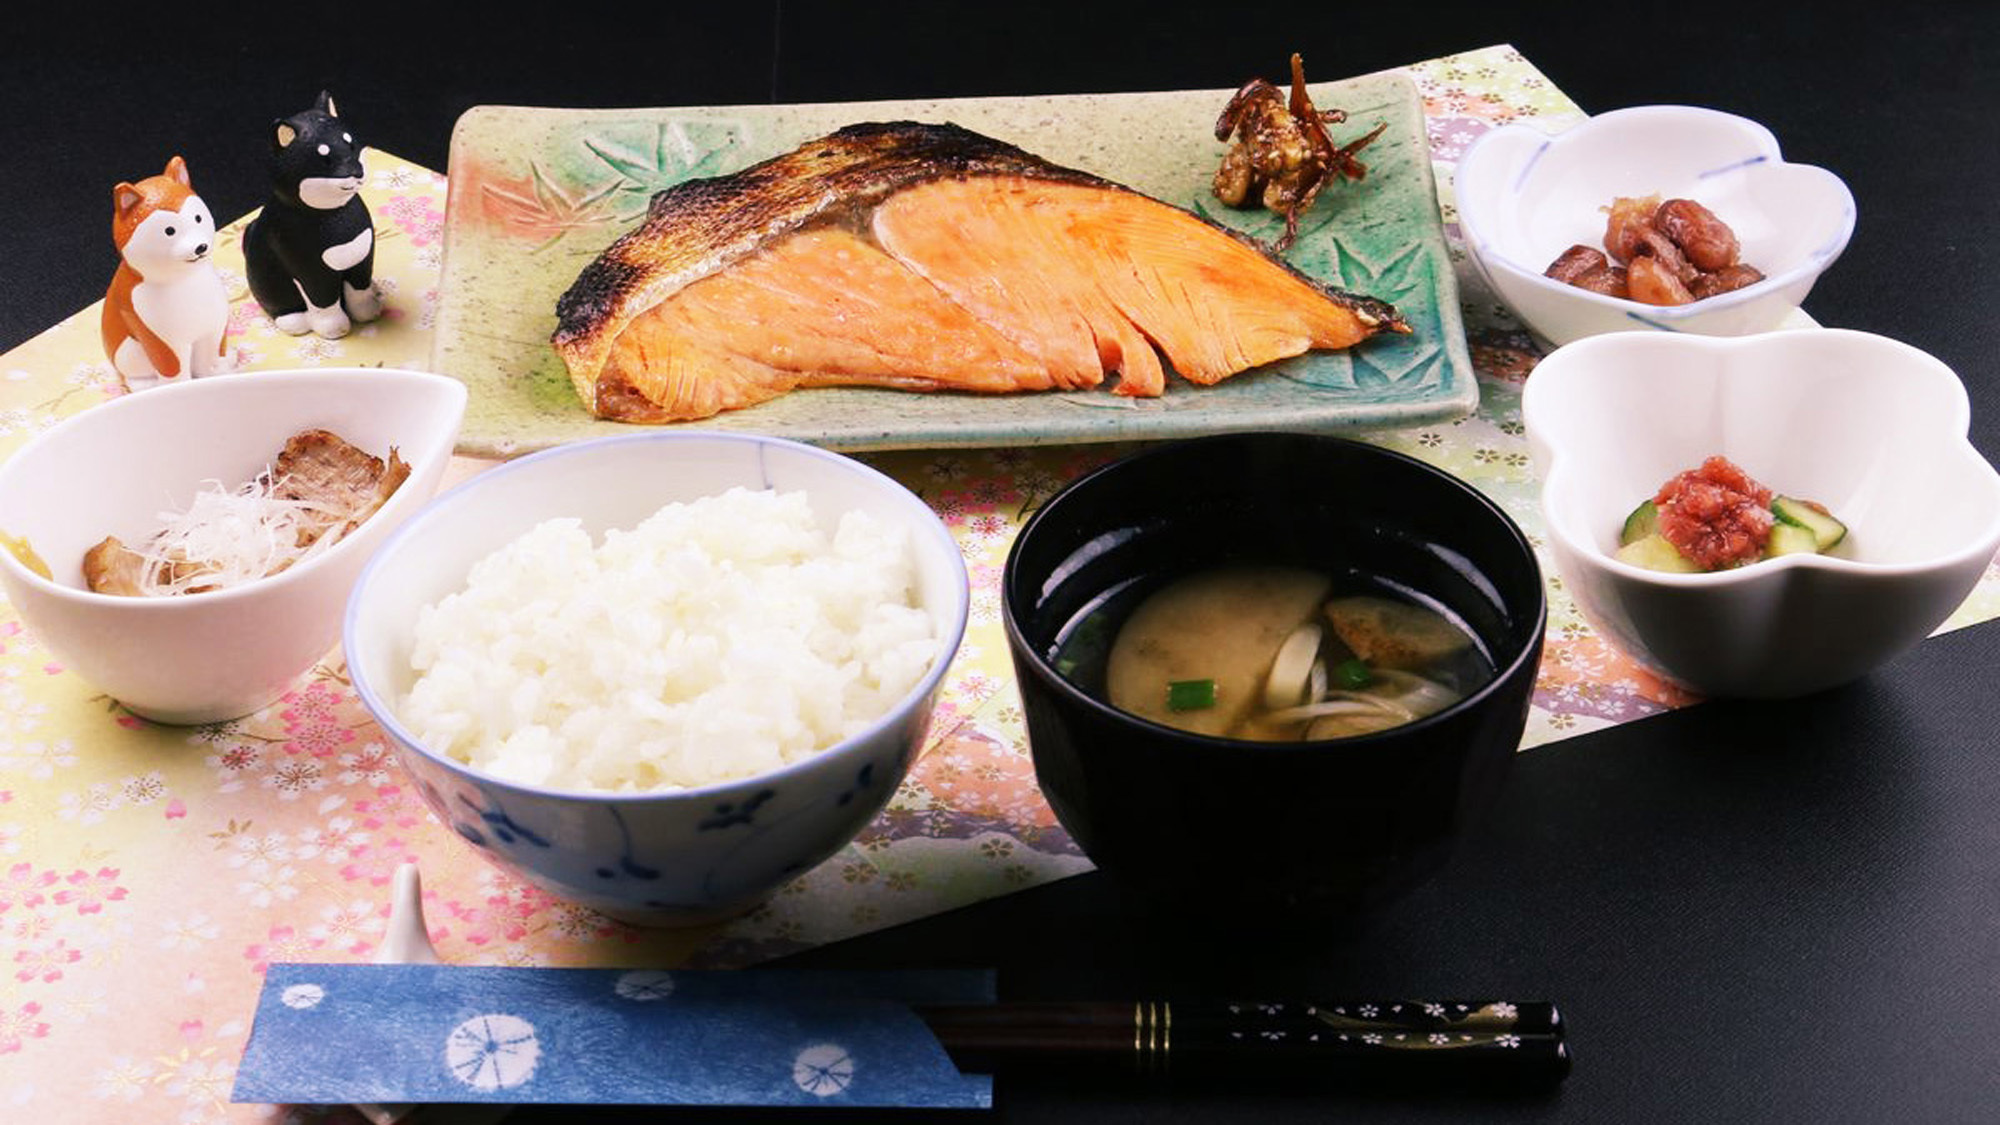 #和朝食は、脂がのったキングサーモンは何度も食べたくなるお味